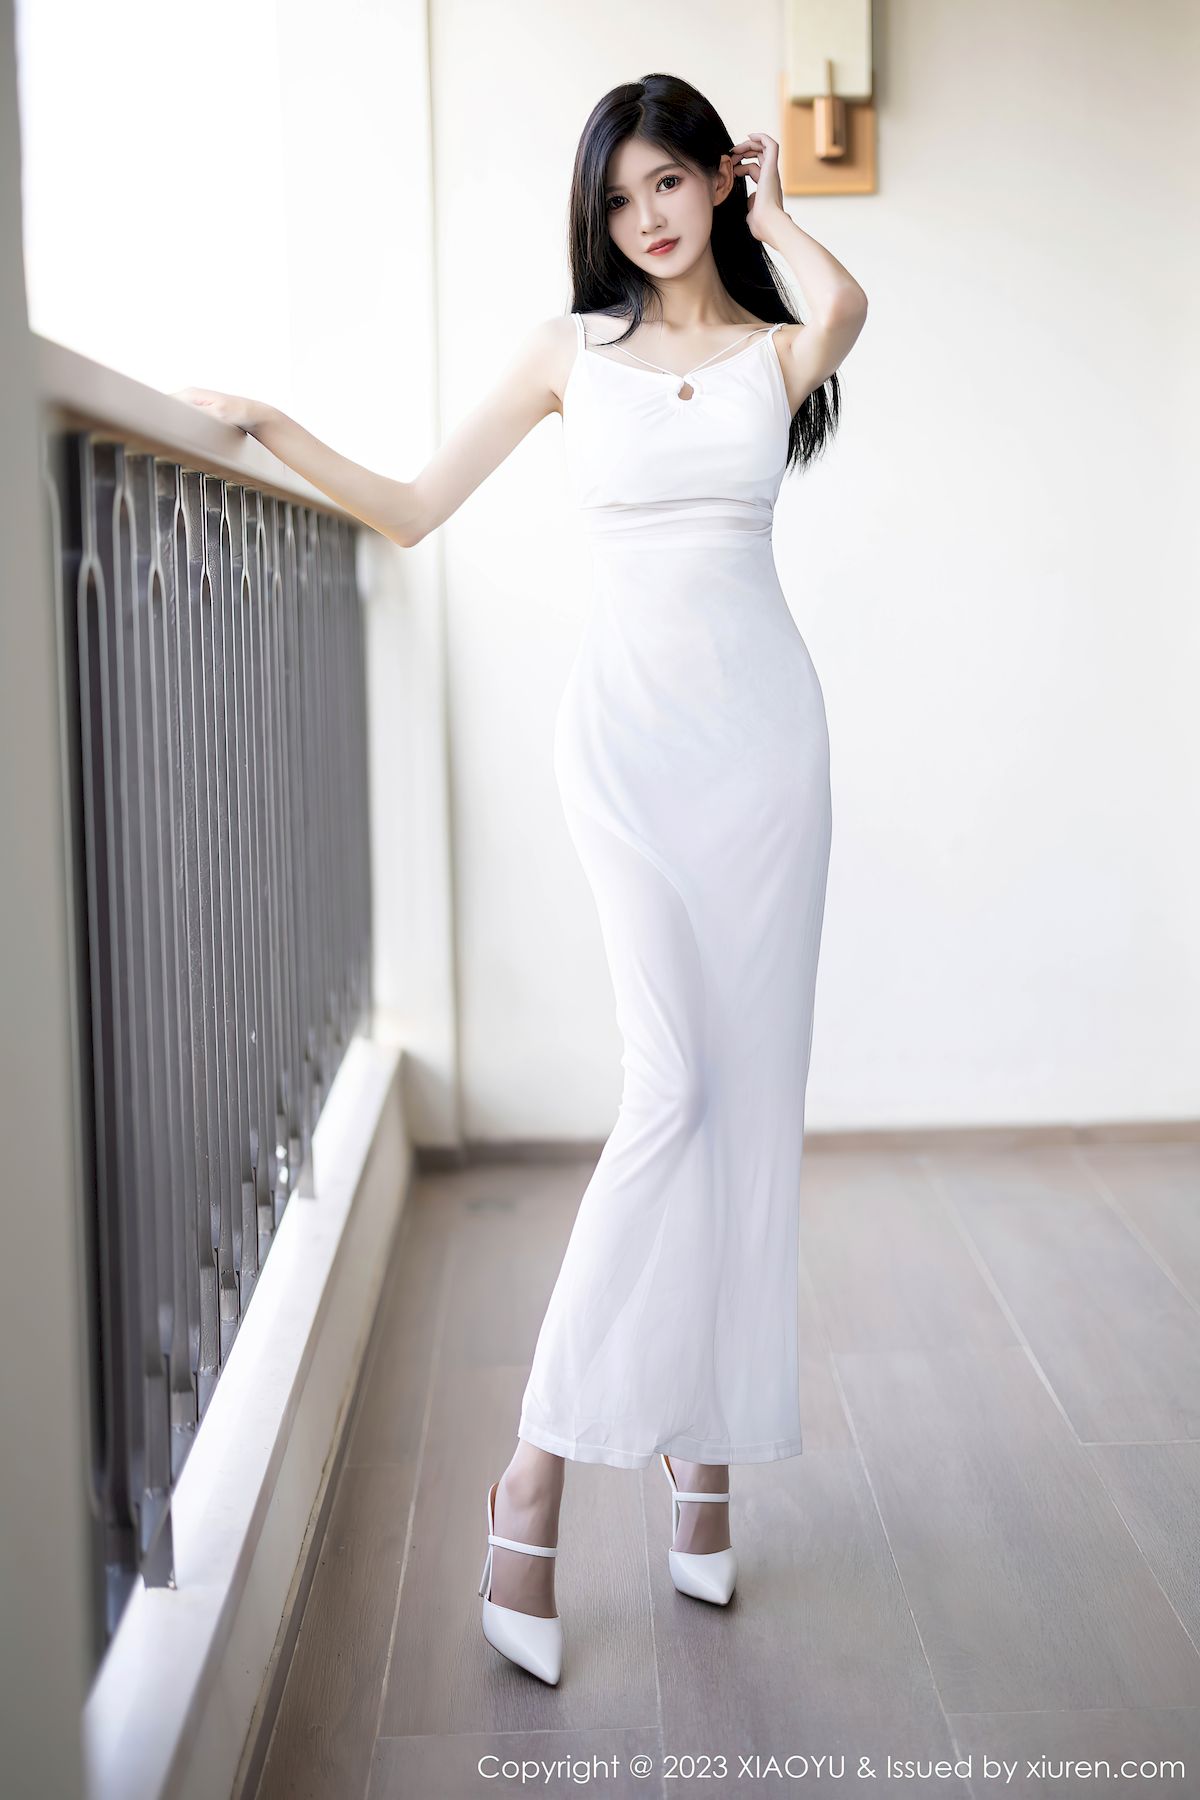 程程程-白色长裙服饰清秀身材性感写真